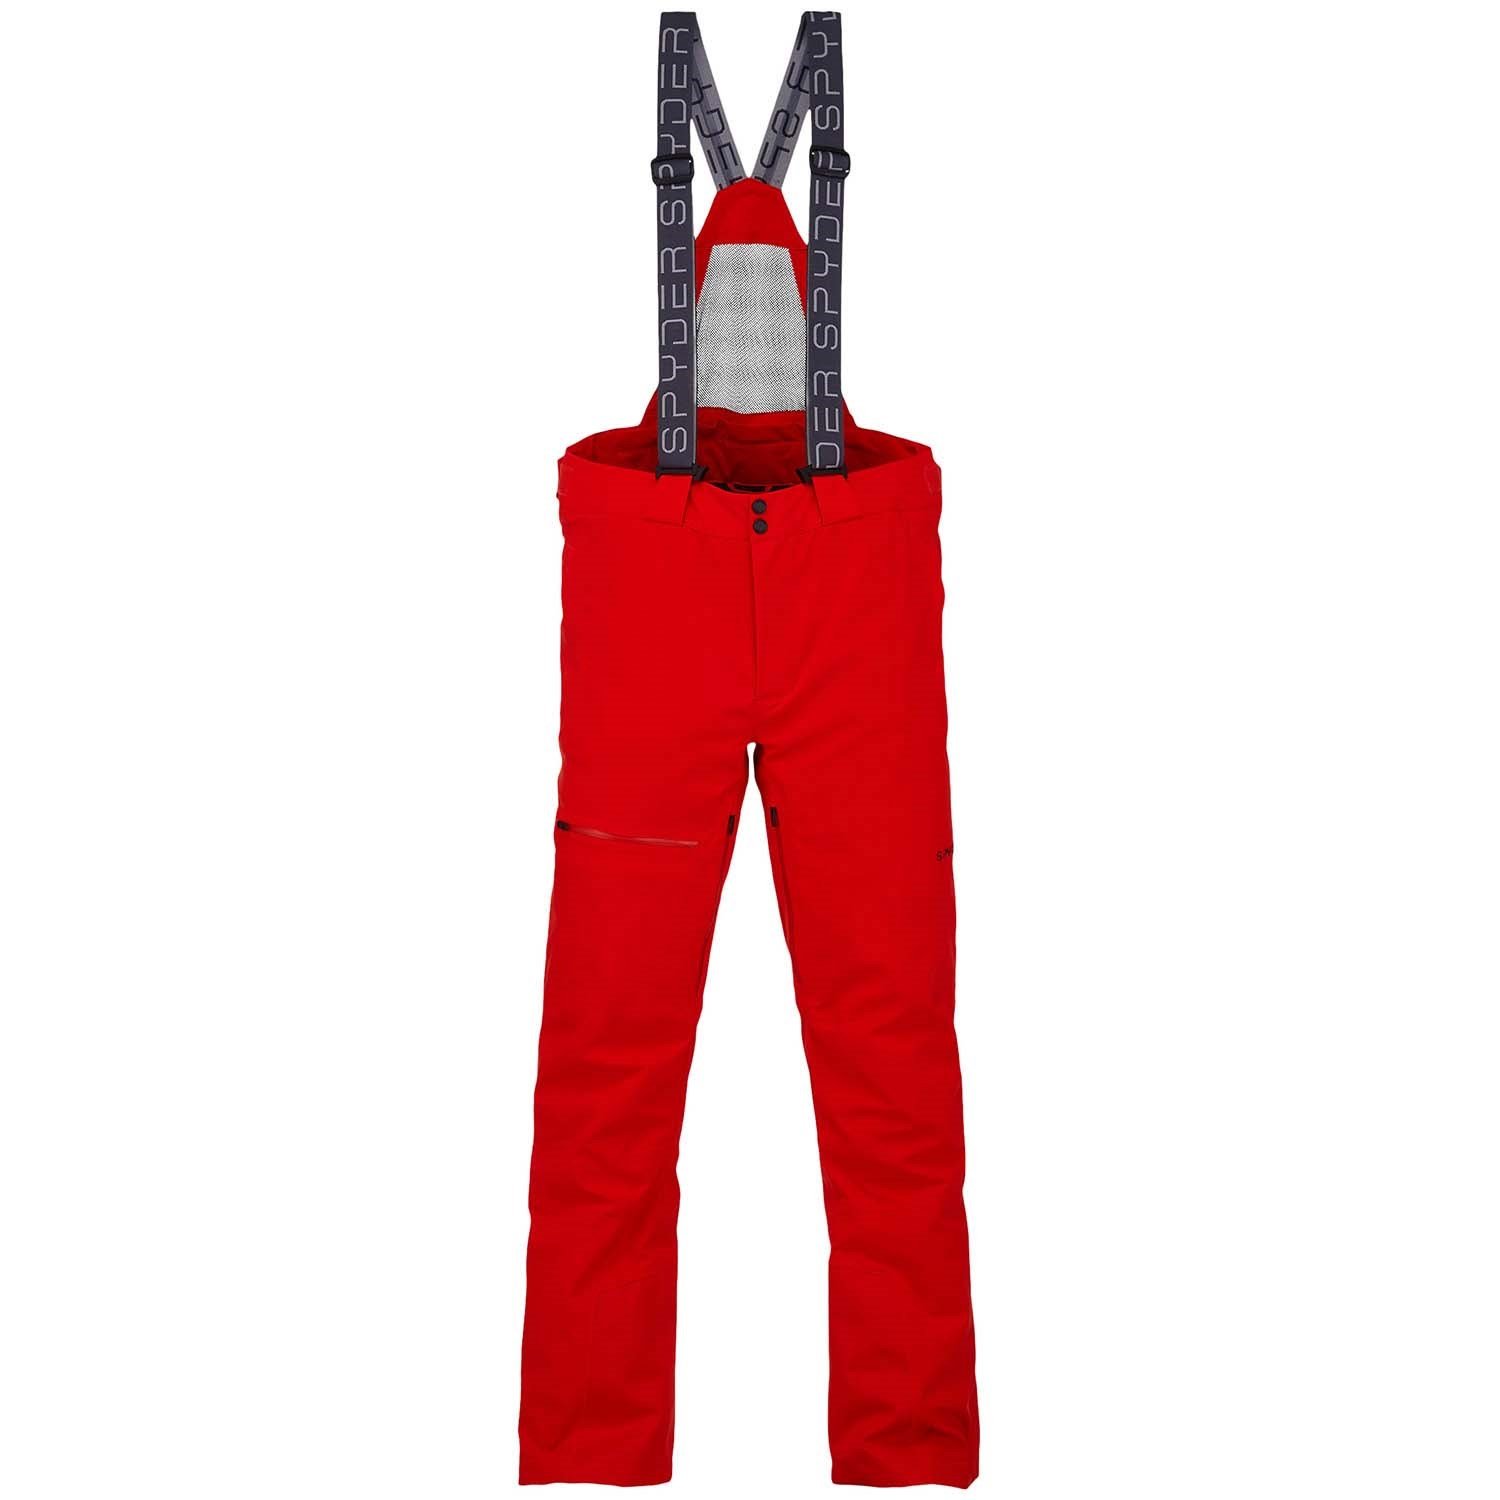 Spyder, Pants & Jumpsuits, Spyder Insulated Ski Pants Size